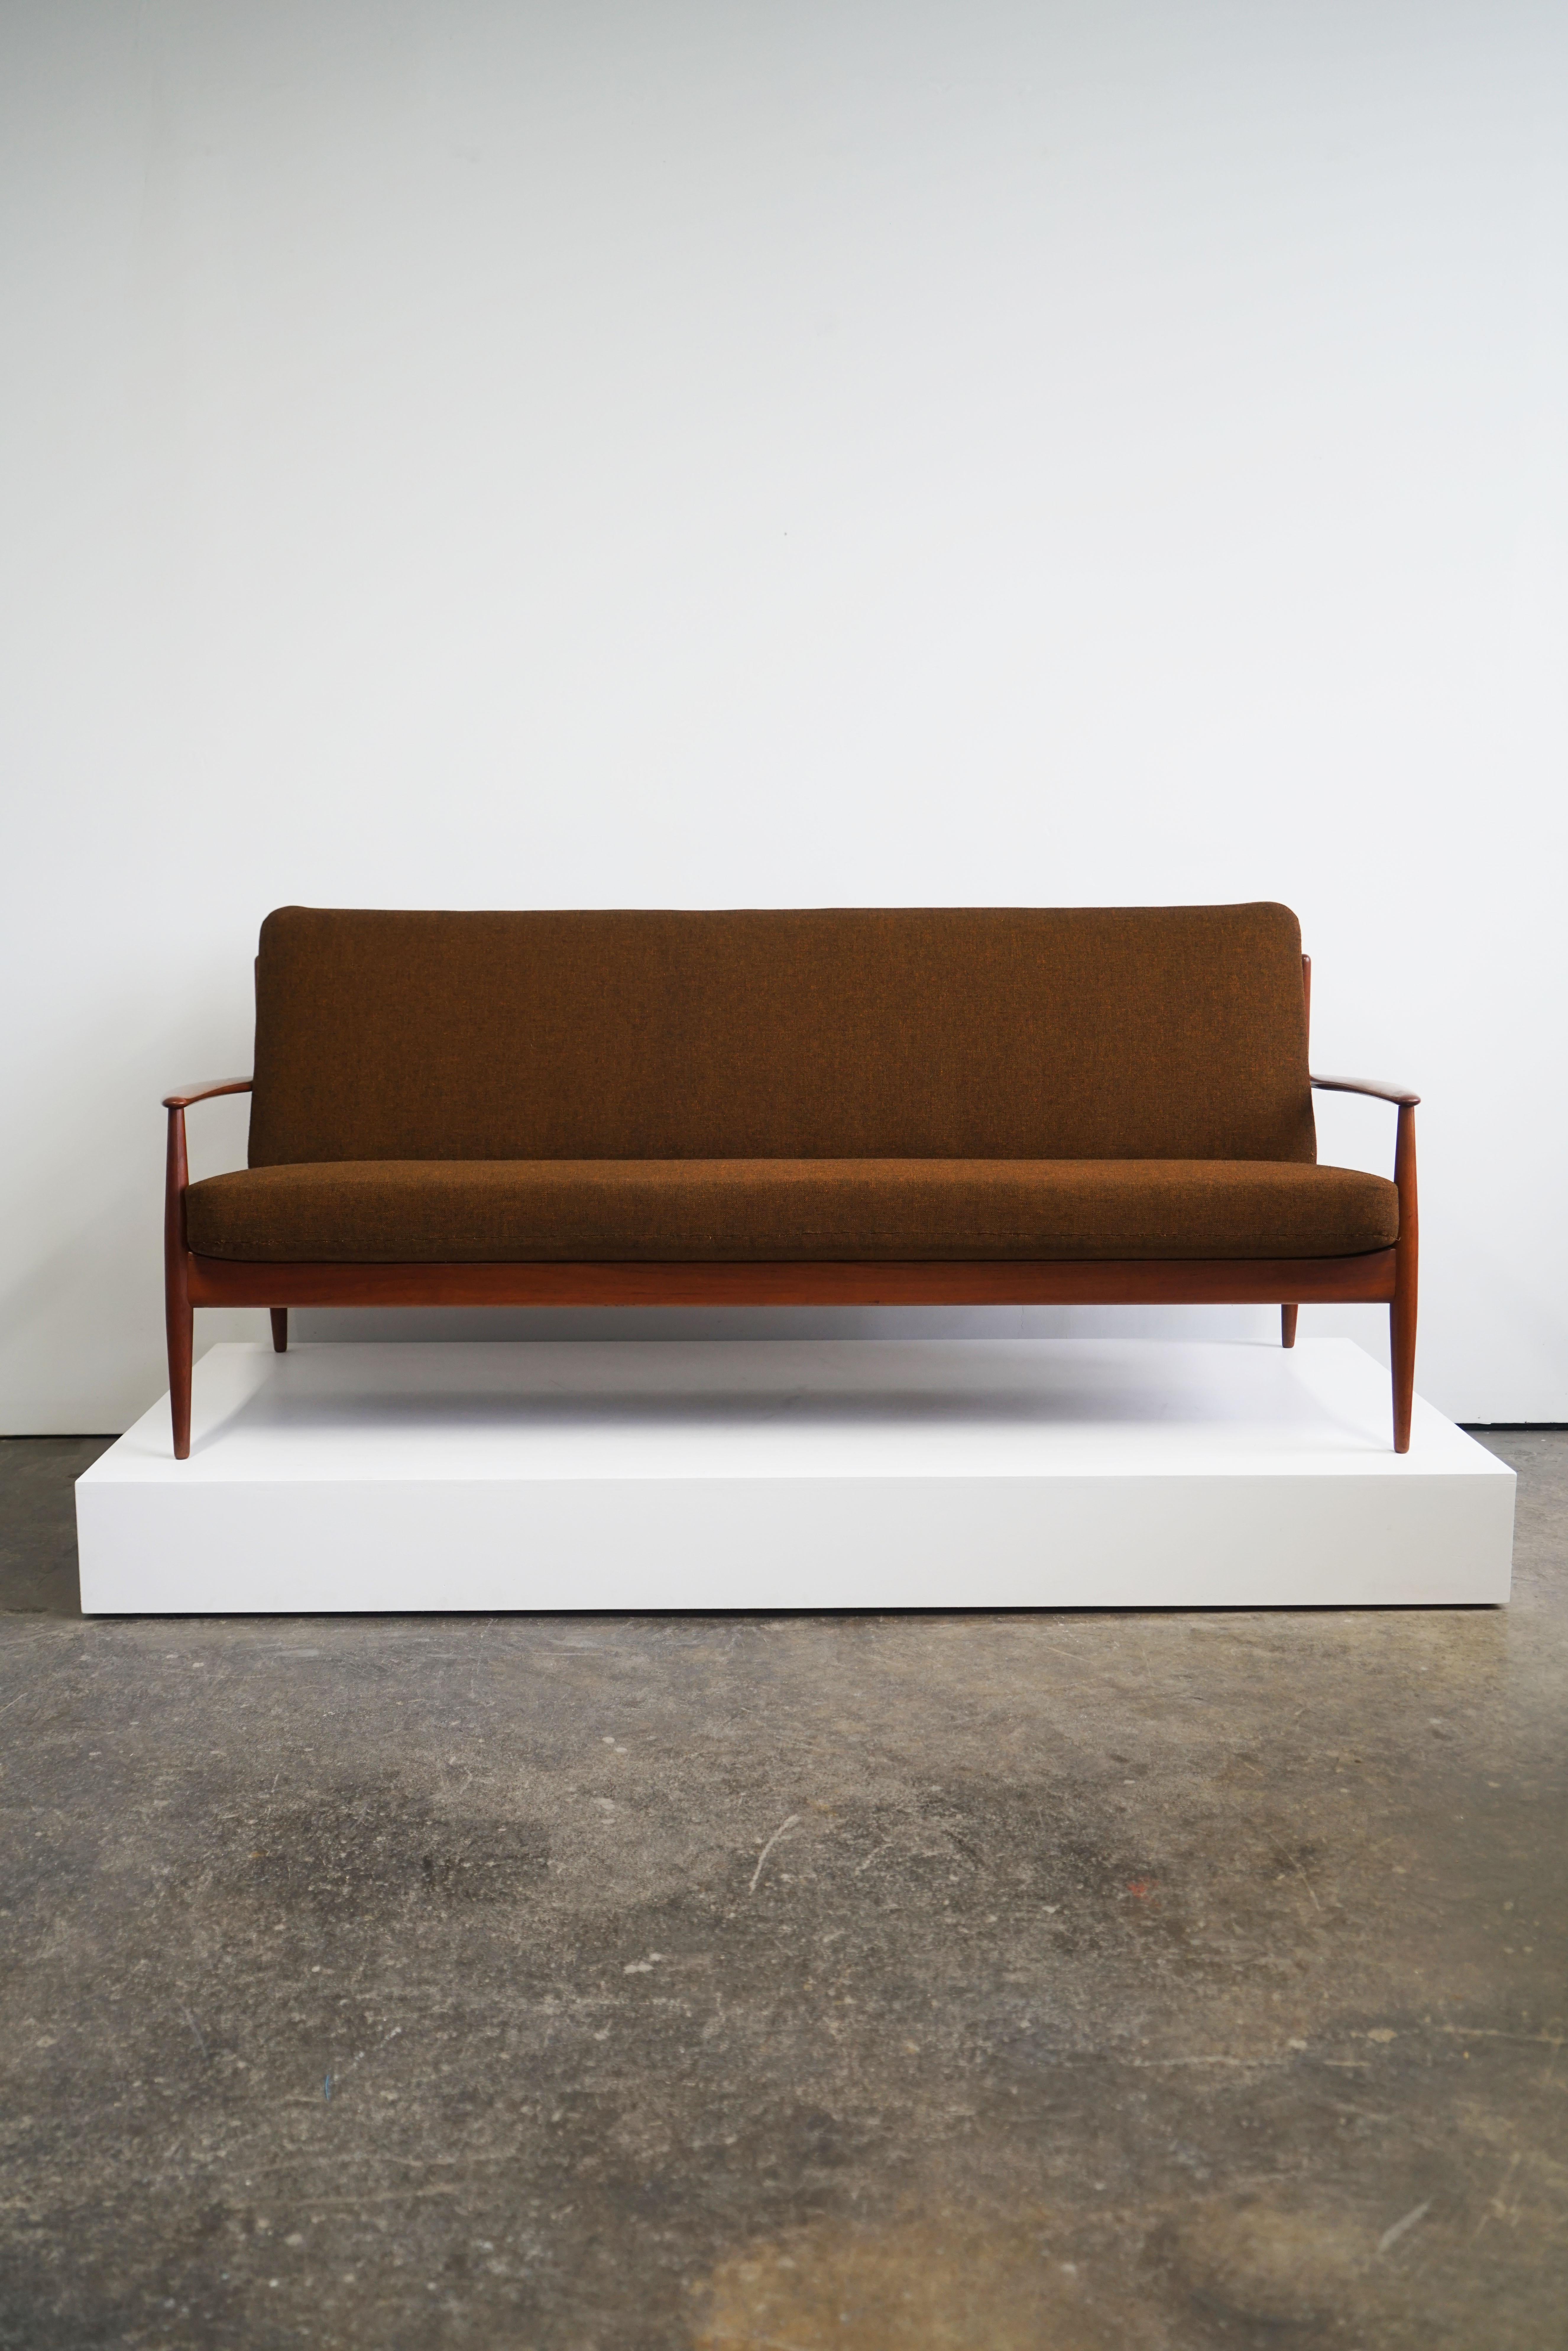 Grete Jalk sofa for France & Daverkosen
Denmark, circa 1955
Teak frame, upholstery. 

Measures: 80.5